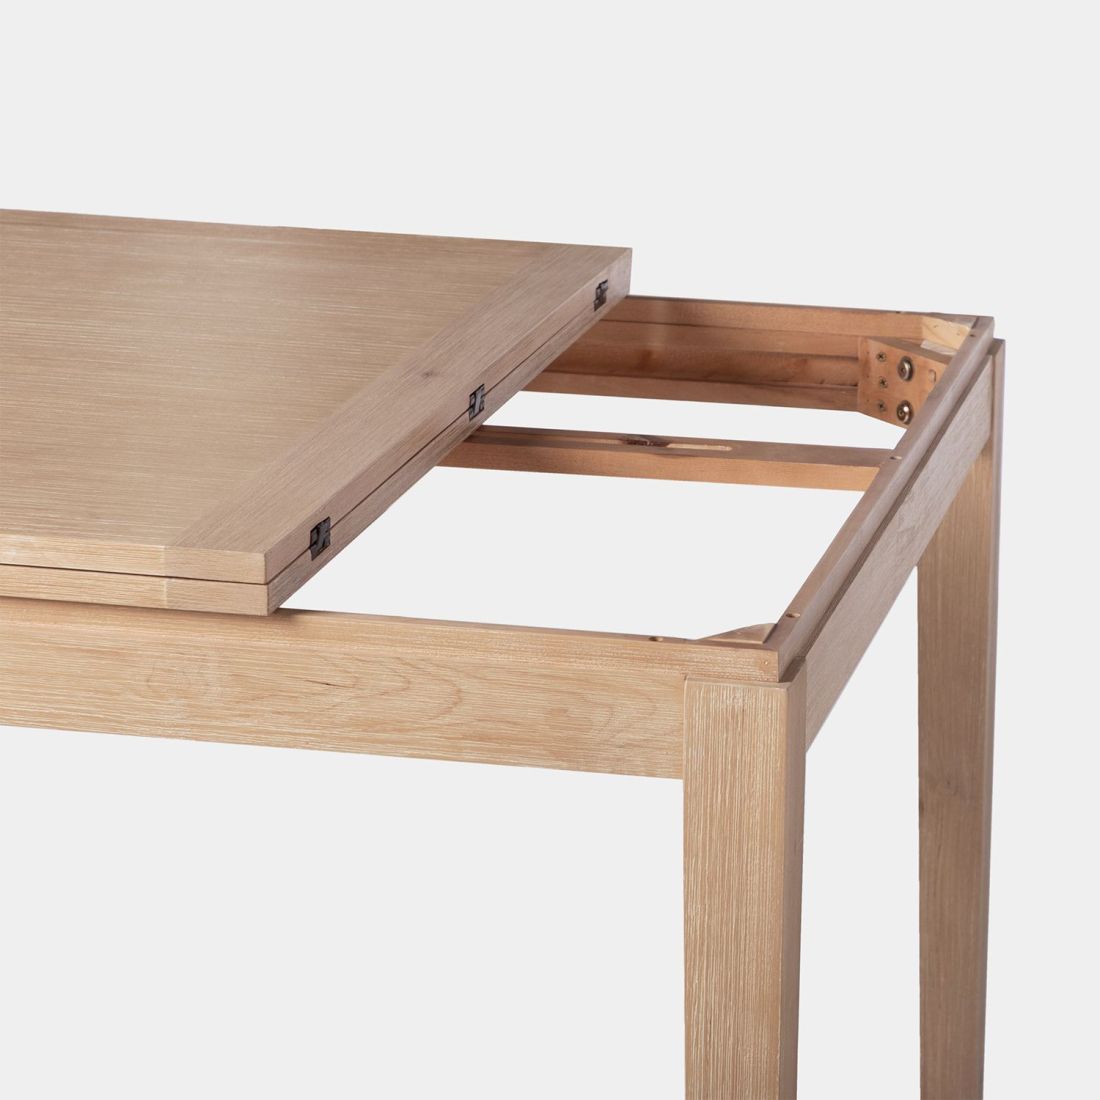 Blay mesa de comedor extensible cuadrada 90/180 de madera color natural